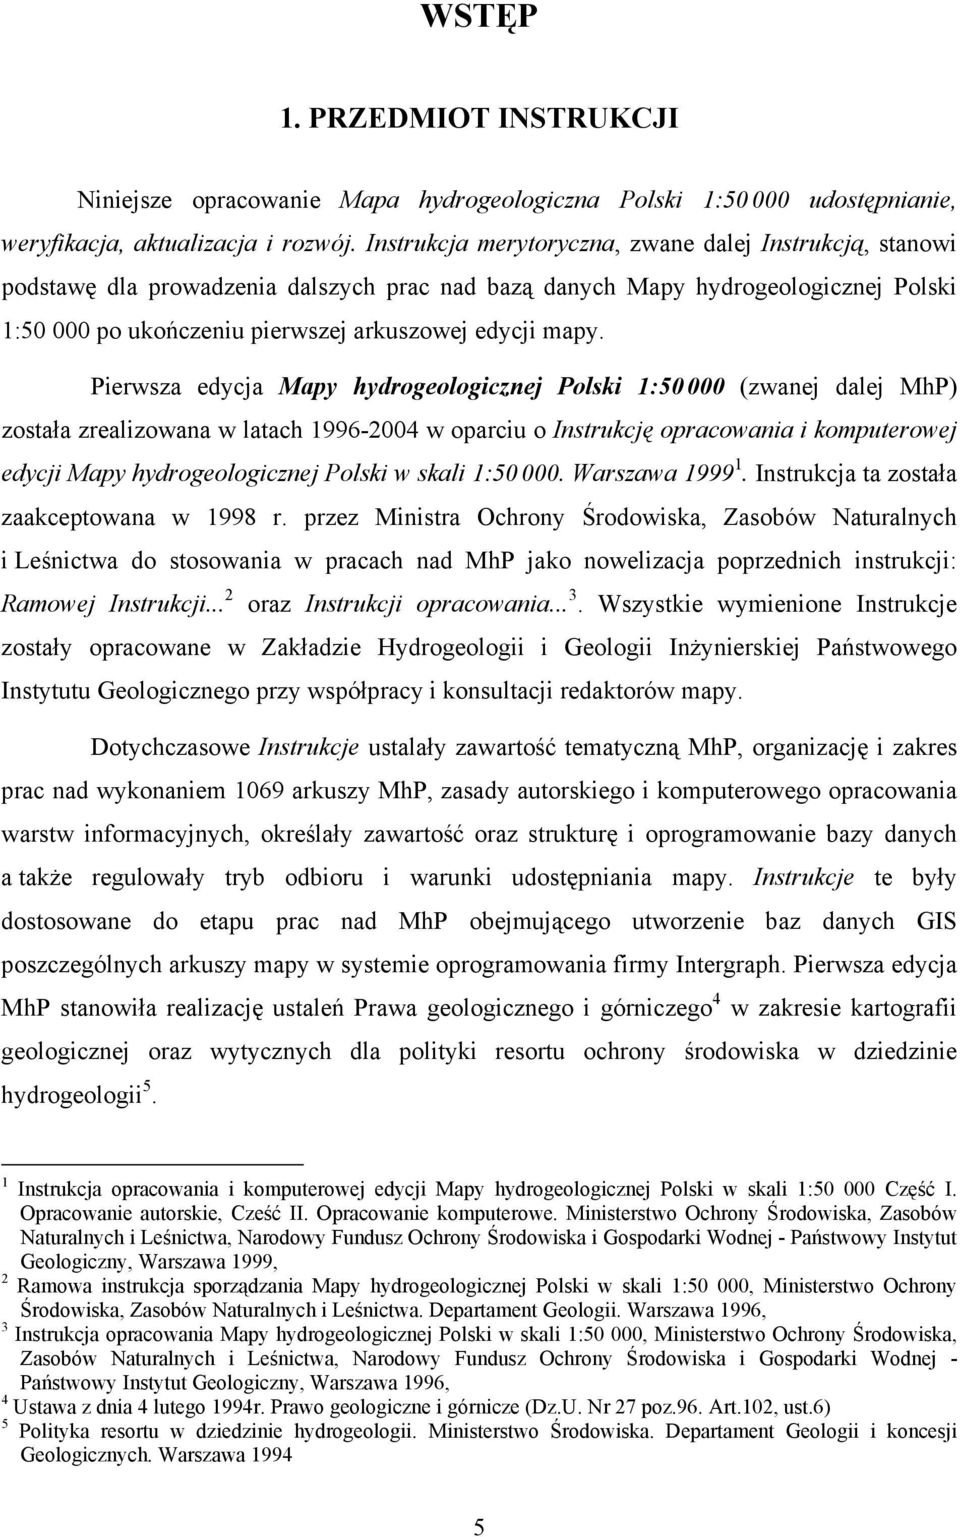 Pierwsza edycja Mapy hydrogeologicznej Polski 1:50 000 (zwanej dalej MhP) została zrealizowana w latach 1996-2004 w oparciu o Instrukcję opracowania i komputerowej edycji Mapy hydrogeologicznej